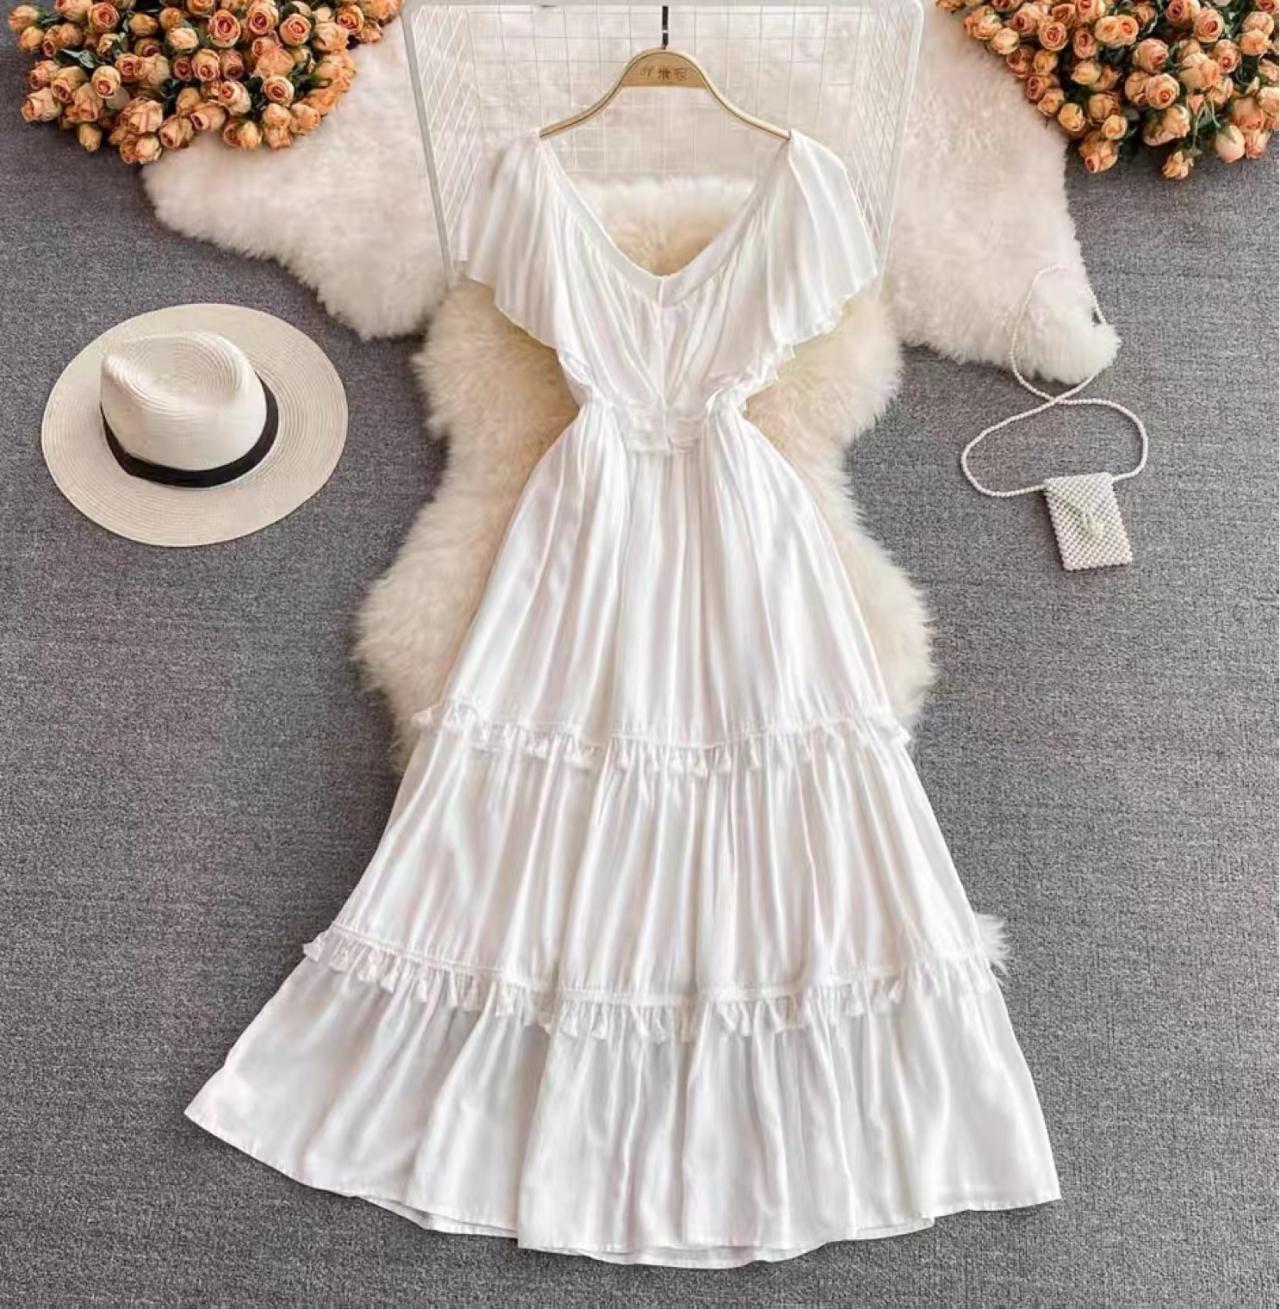 Beach Holiday Dress, V-neck White Fringed Peplum Halter Dress, Elegant Swing Dress